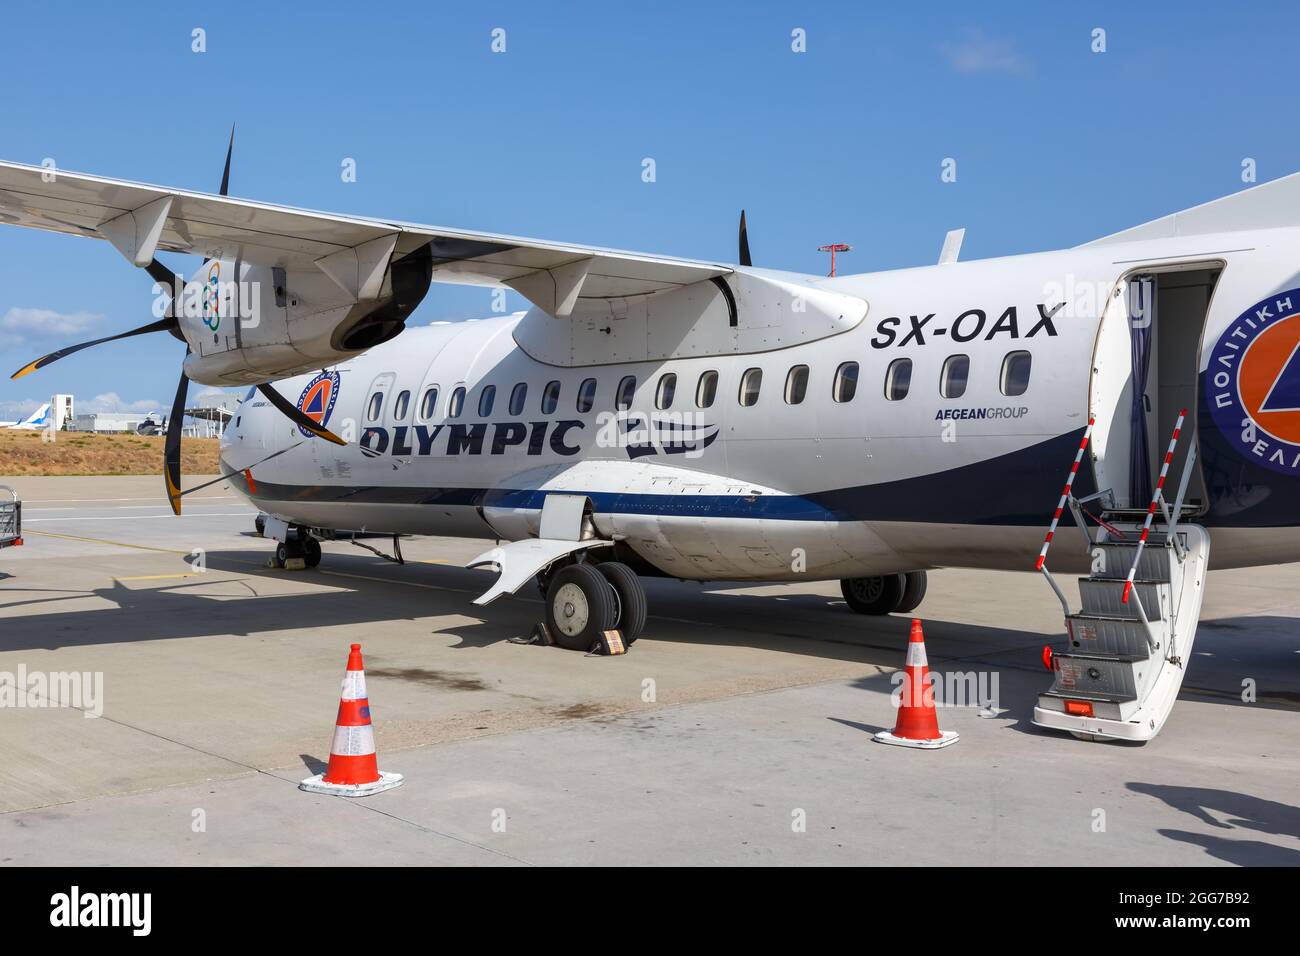 Atene, Grecia - 21 settembre 2020: Aereo Olympic Air ATR 42-600 all'aeroporto di Atene (ATH) in Grecia. Foto Stock